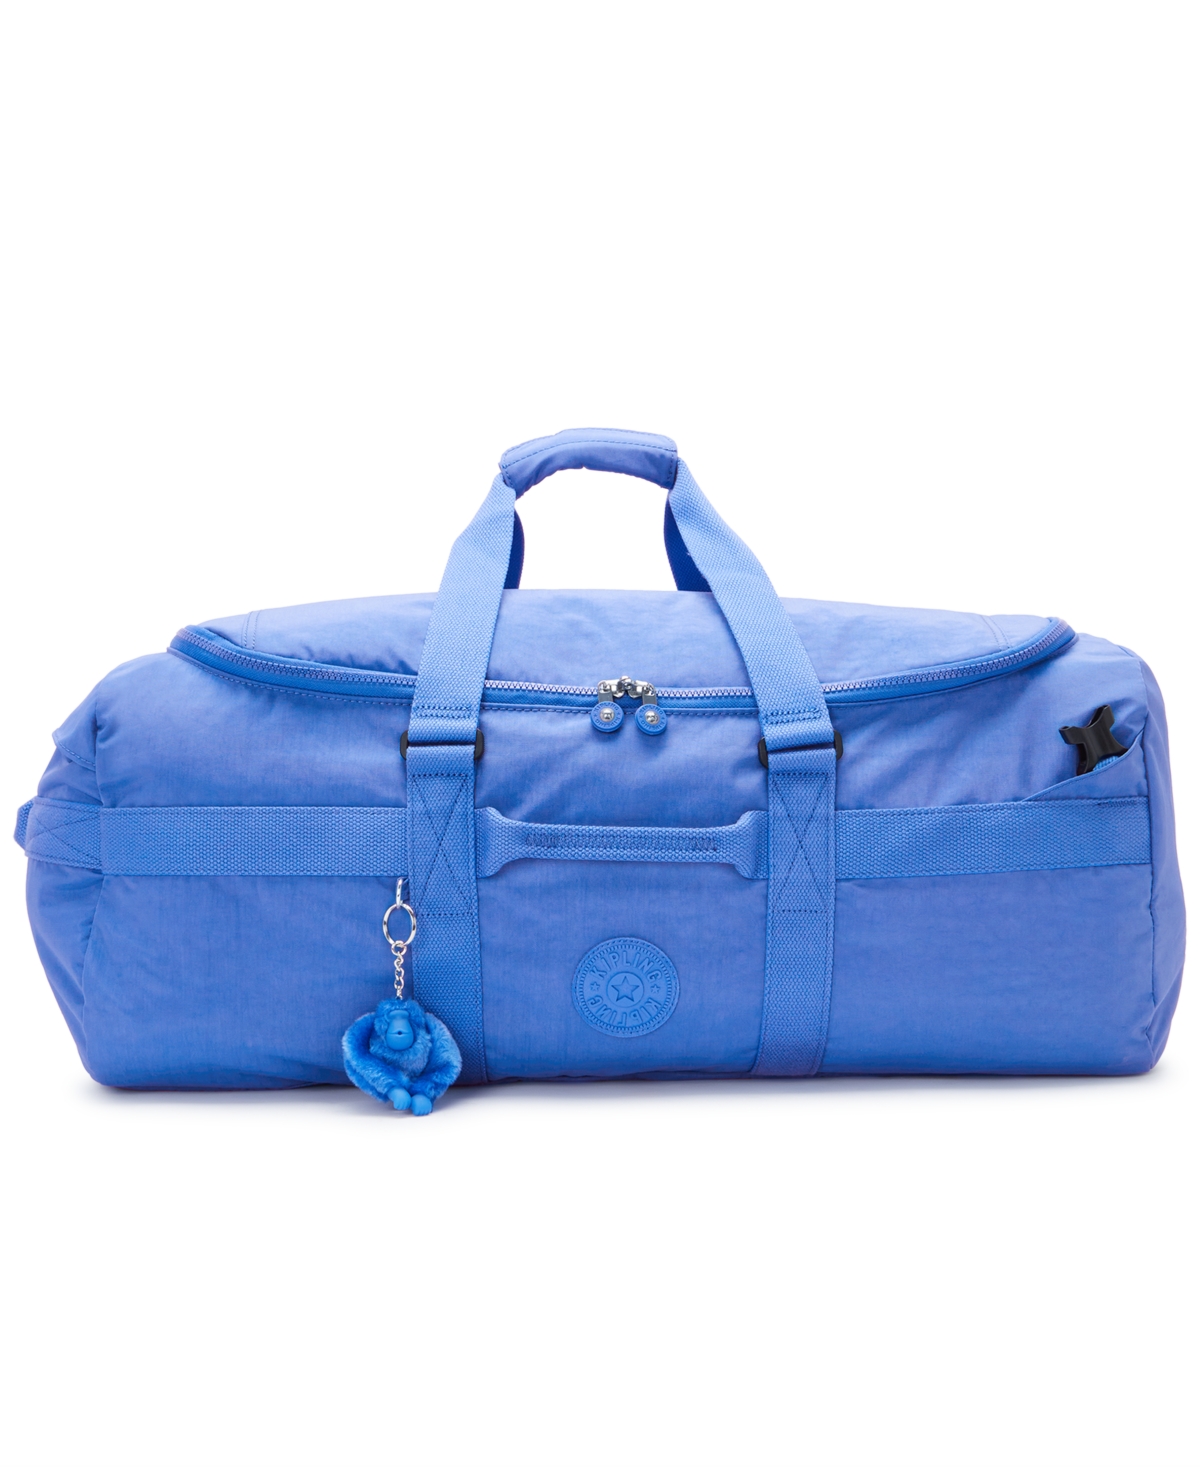 Kipling Jonis Medium Laptop Duffle Bag In Havana Blue